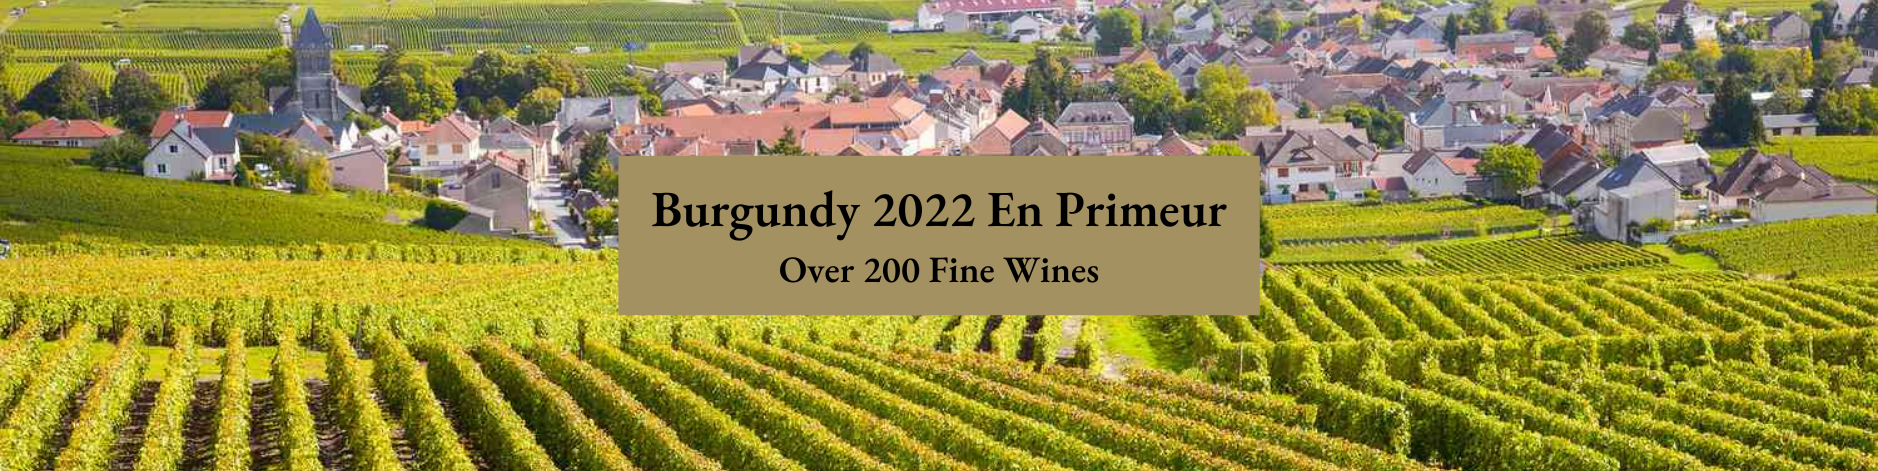 Burgundy 2022 En Primeur